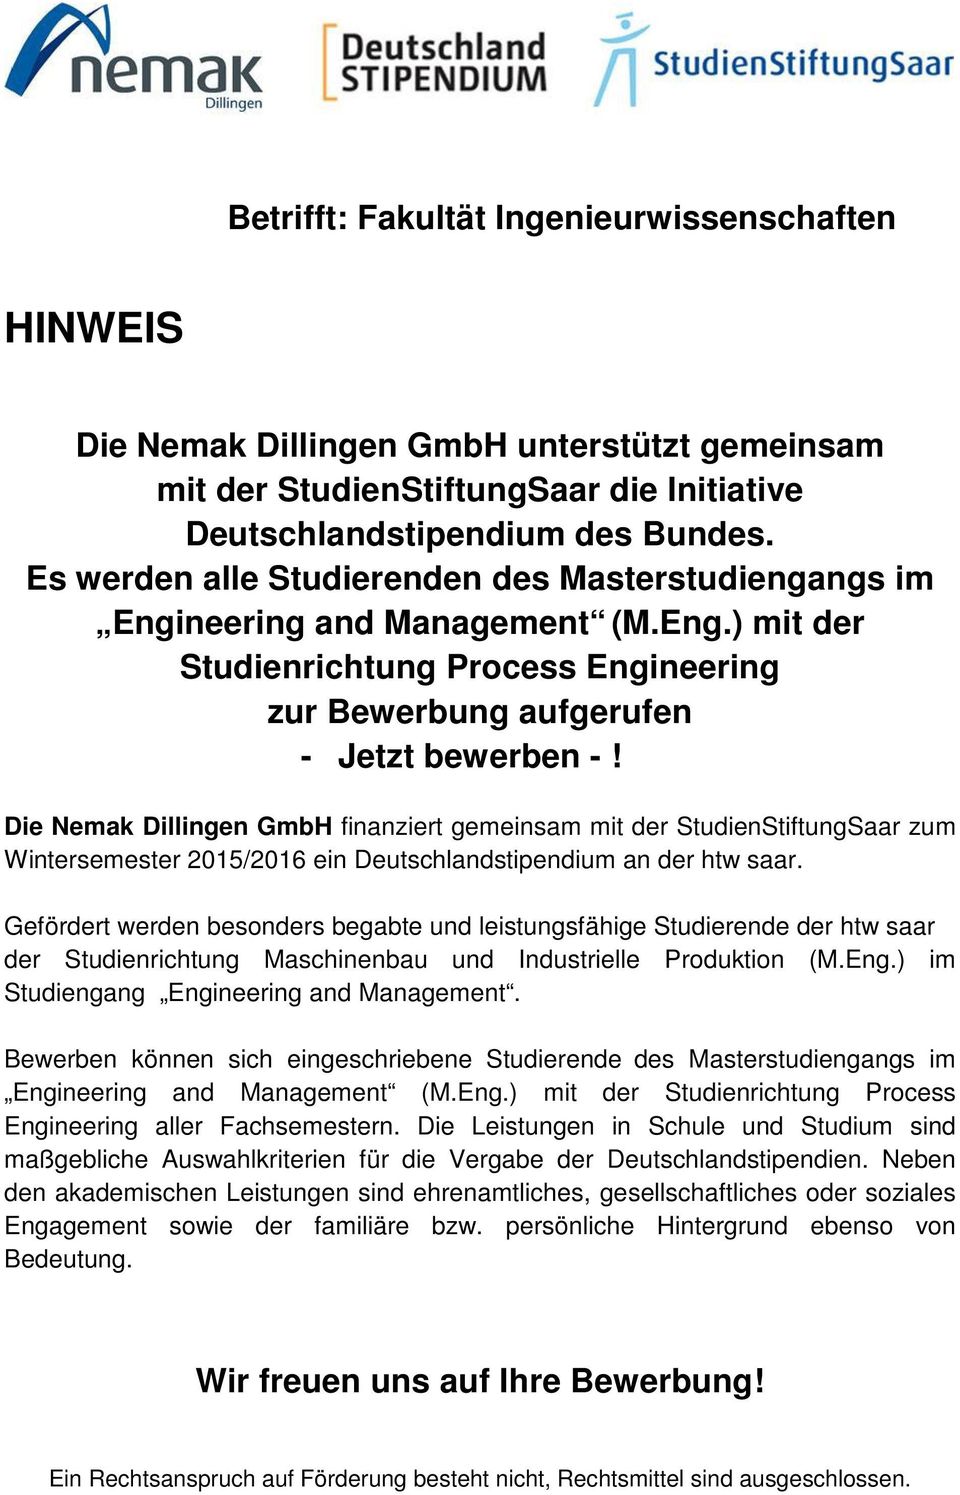 Die Nemak Dillingen GmbH finanziert gemeinsam mit der StudienStiftungSaar zum Wintersemester 2015/2016 ein Deutschlandstipendium an der htw saar.